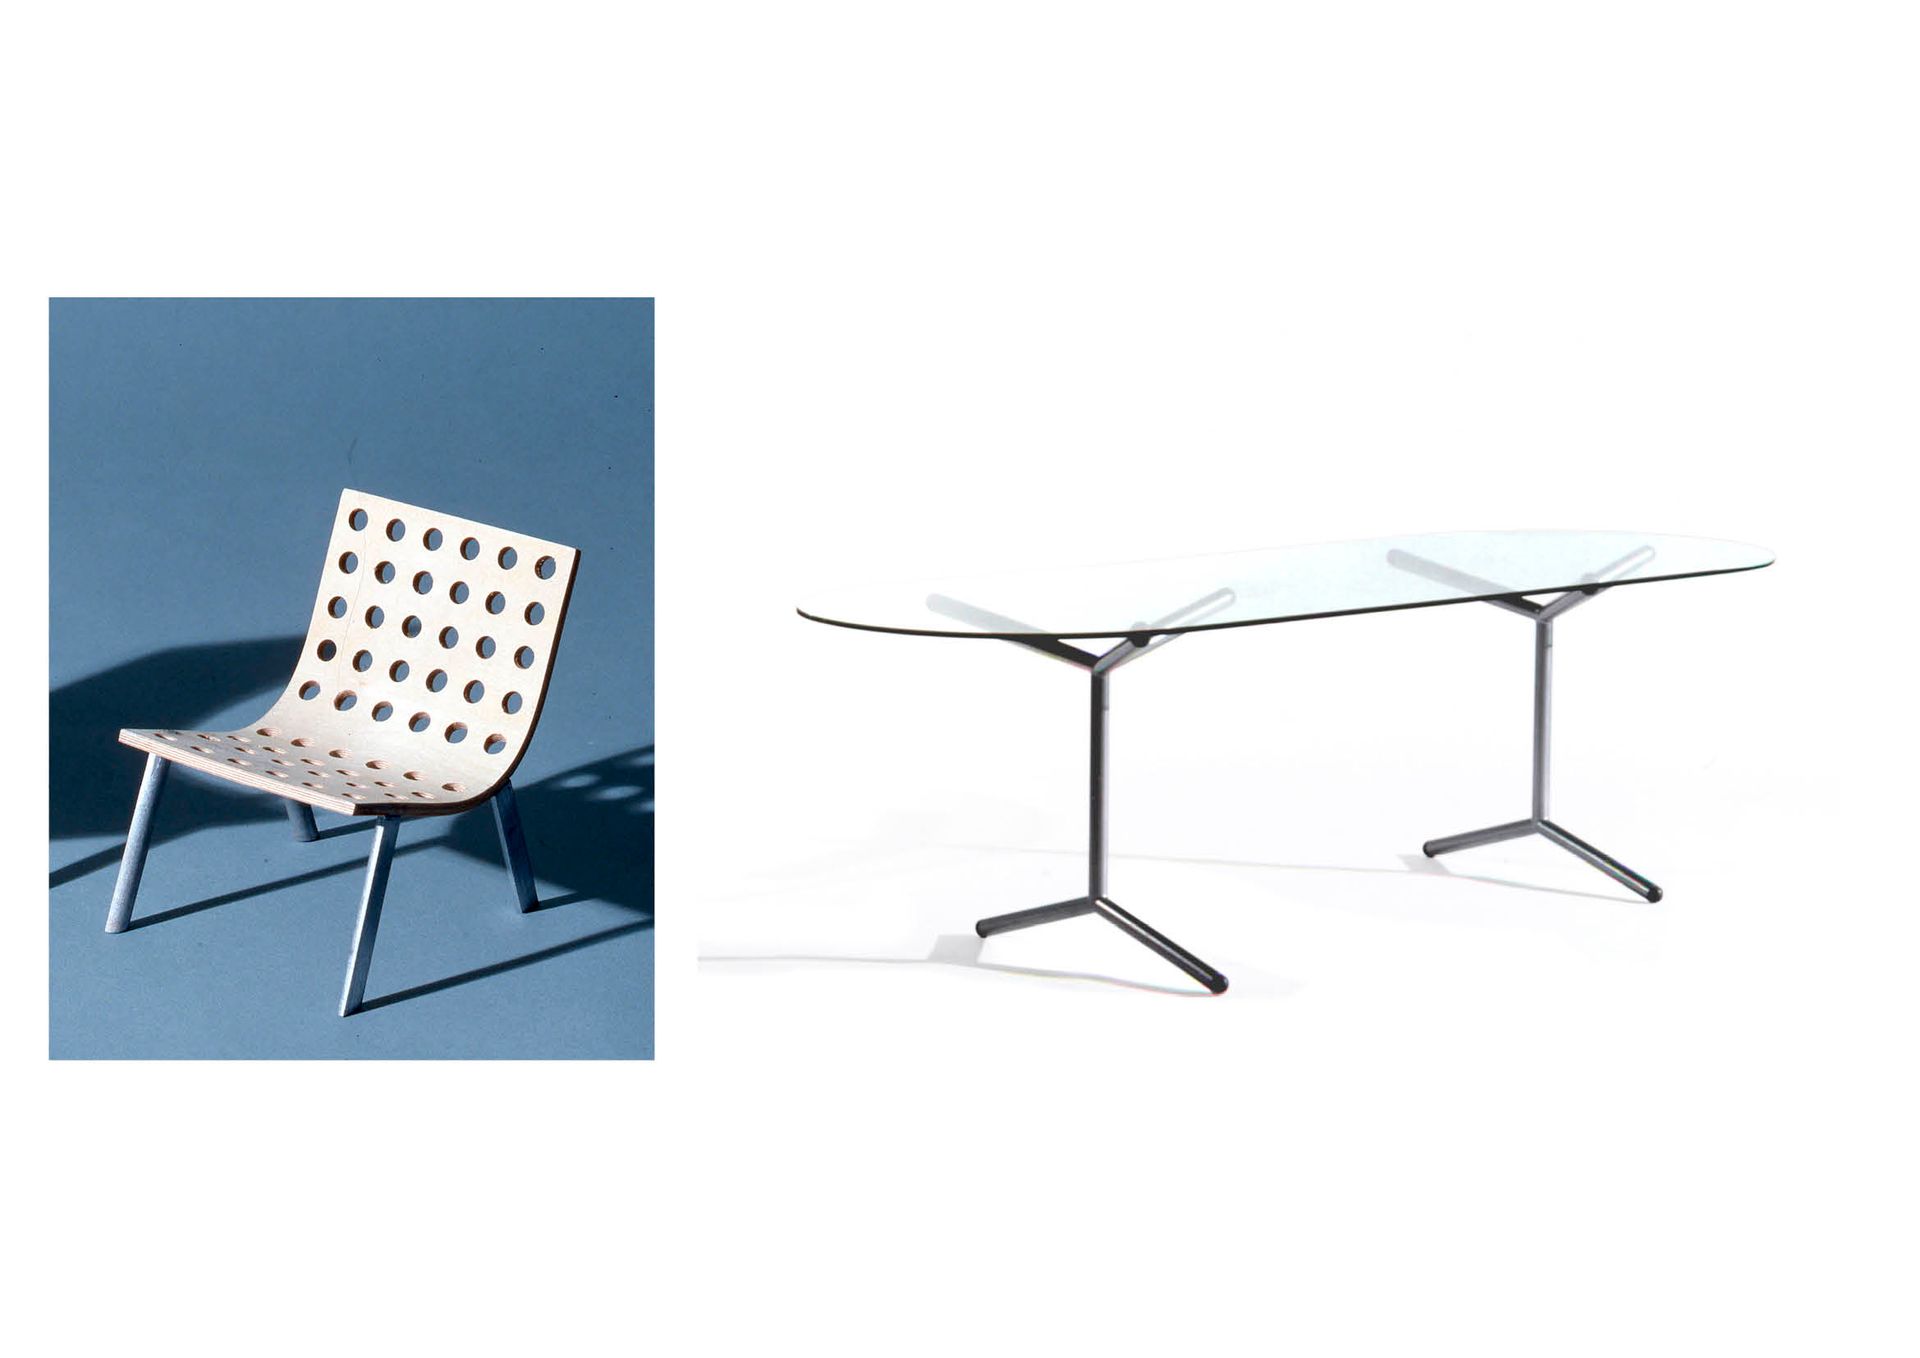 AAS Andréas AAS Andréas

桌子001和炉边椅002

VIA计划：项目援助

年份：1997出版商：未知

原型

1张带金属架和玻璃桌&hellip;